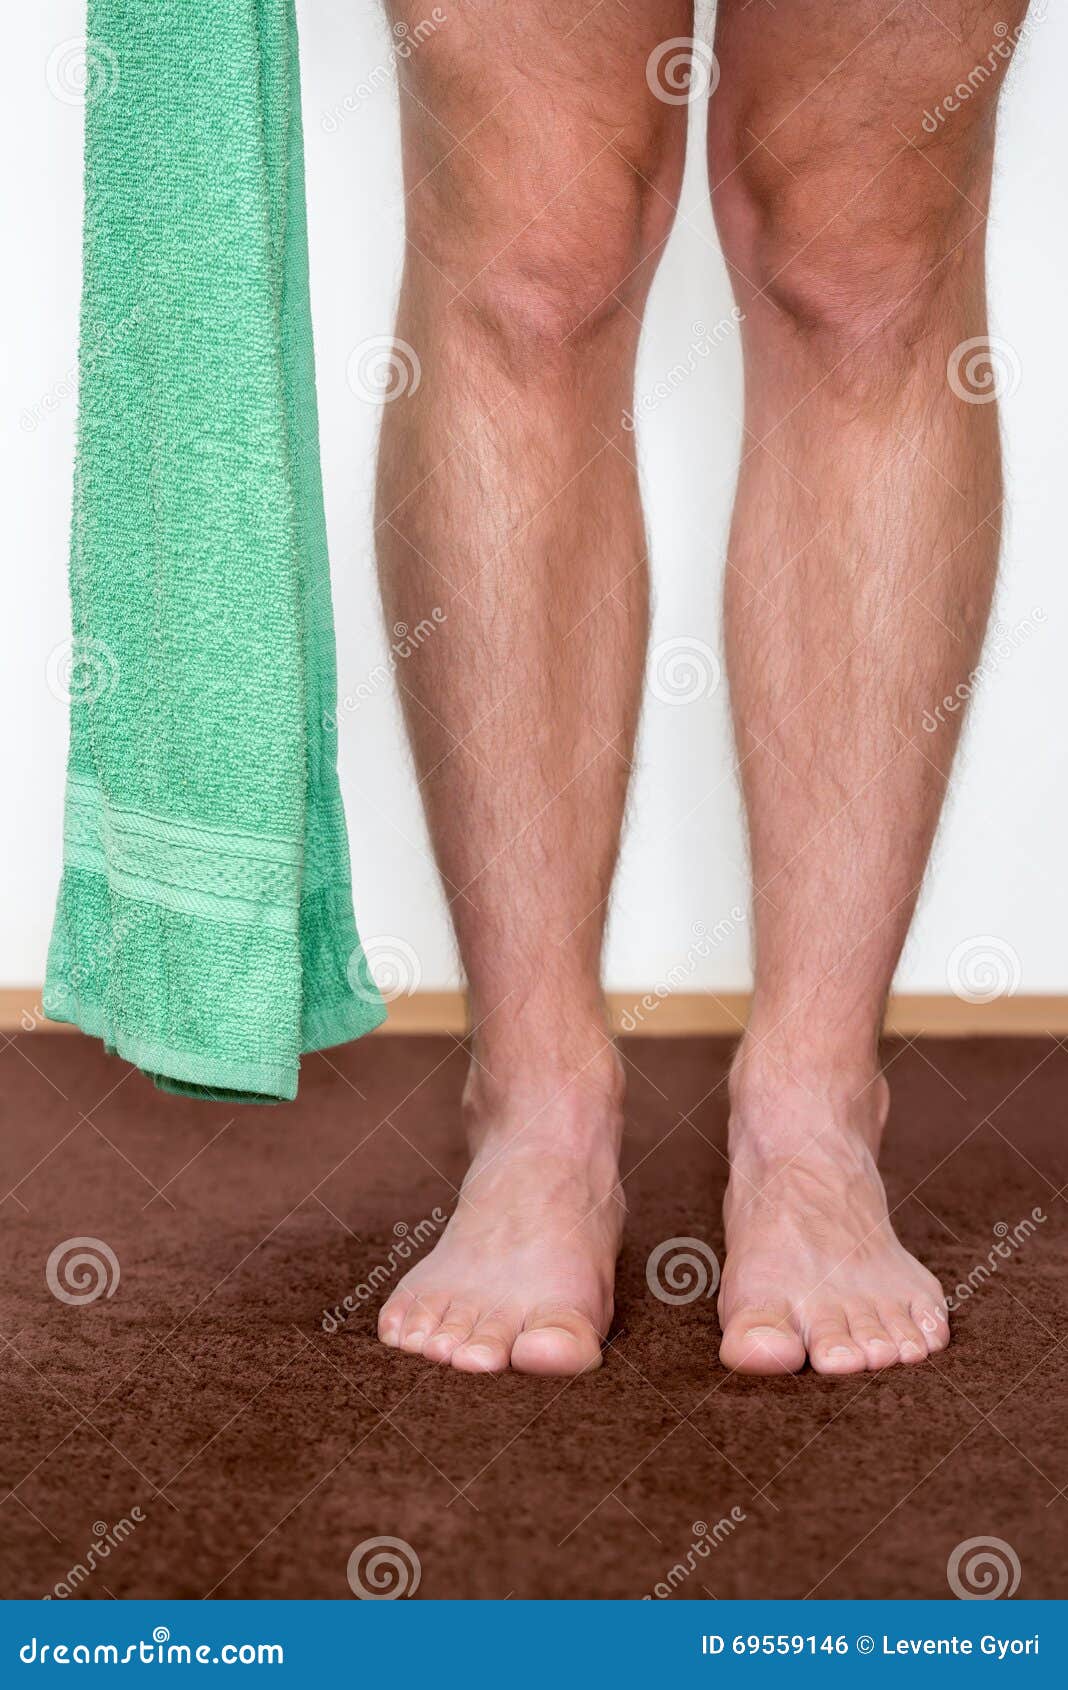 Как выглядят ноги у мужчин. Мужские ноги. Здоровые мужские ноги. Мужская нога спереди.